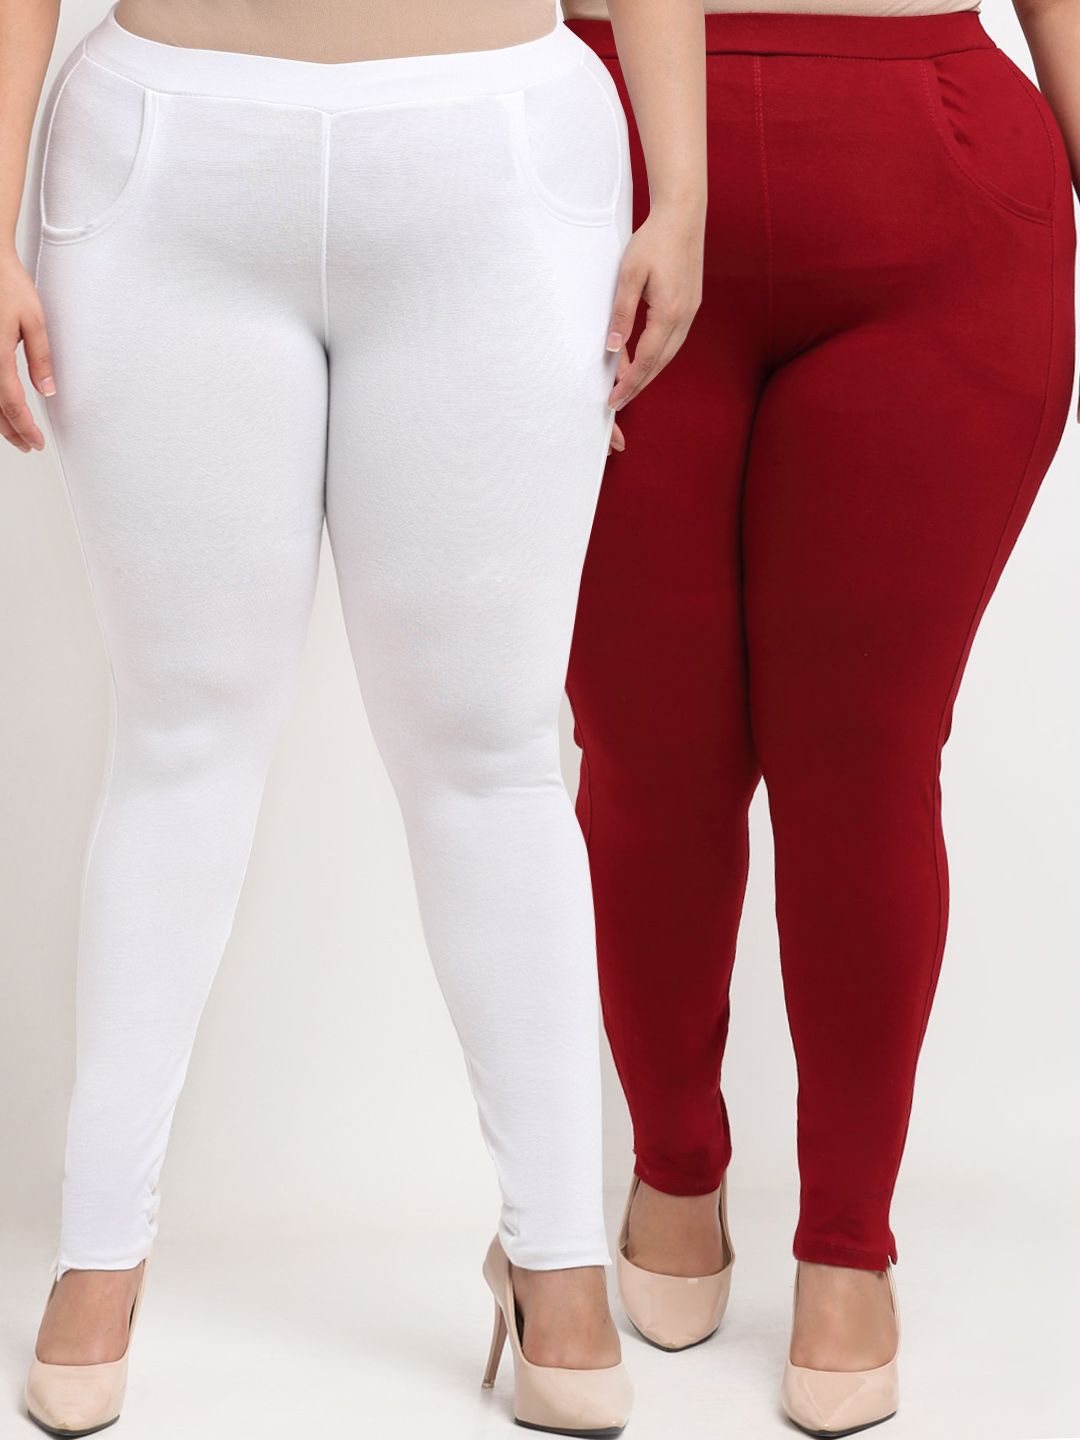 TAG 7 PLUS Women White & Maroon Set of 2 Plus Size Leggings Price in India